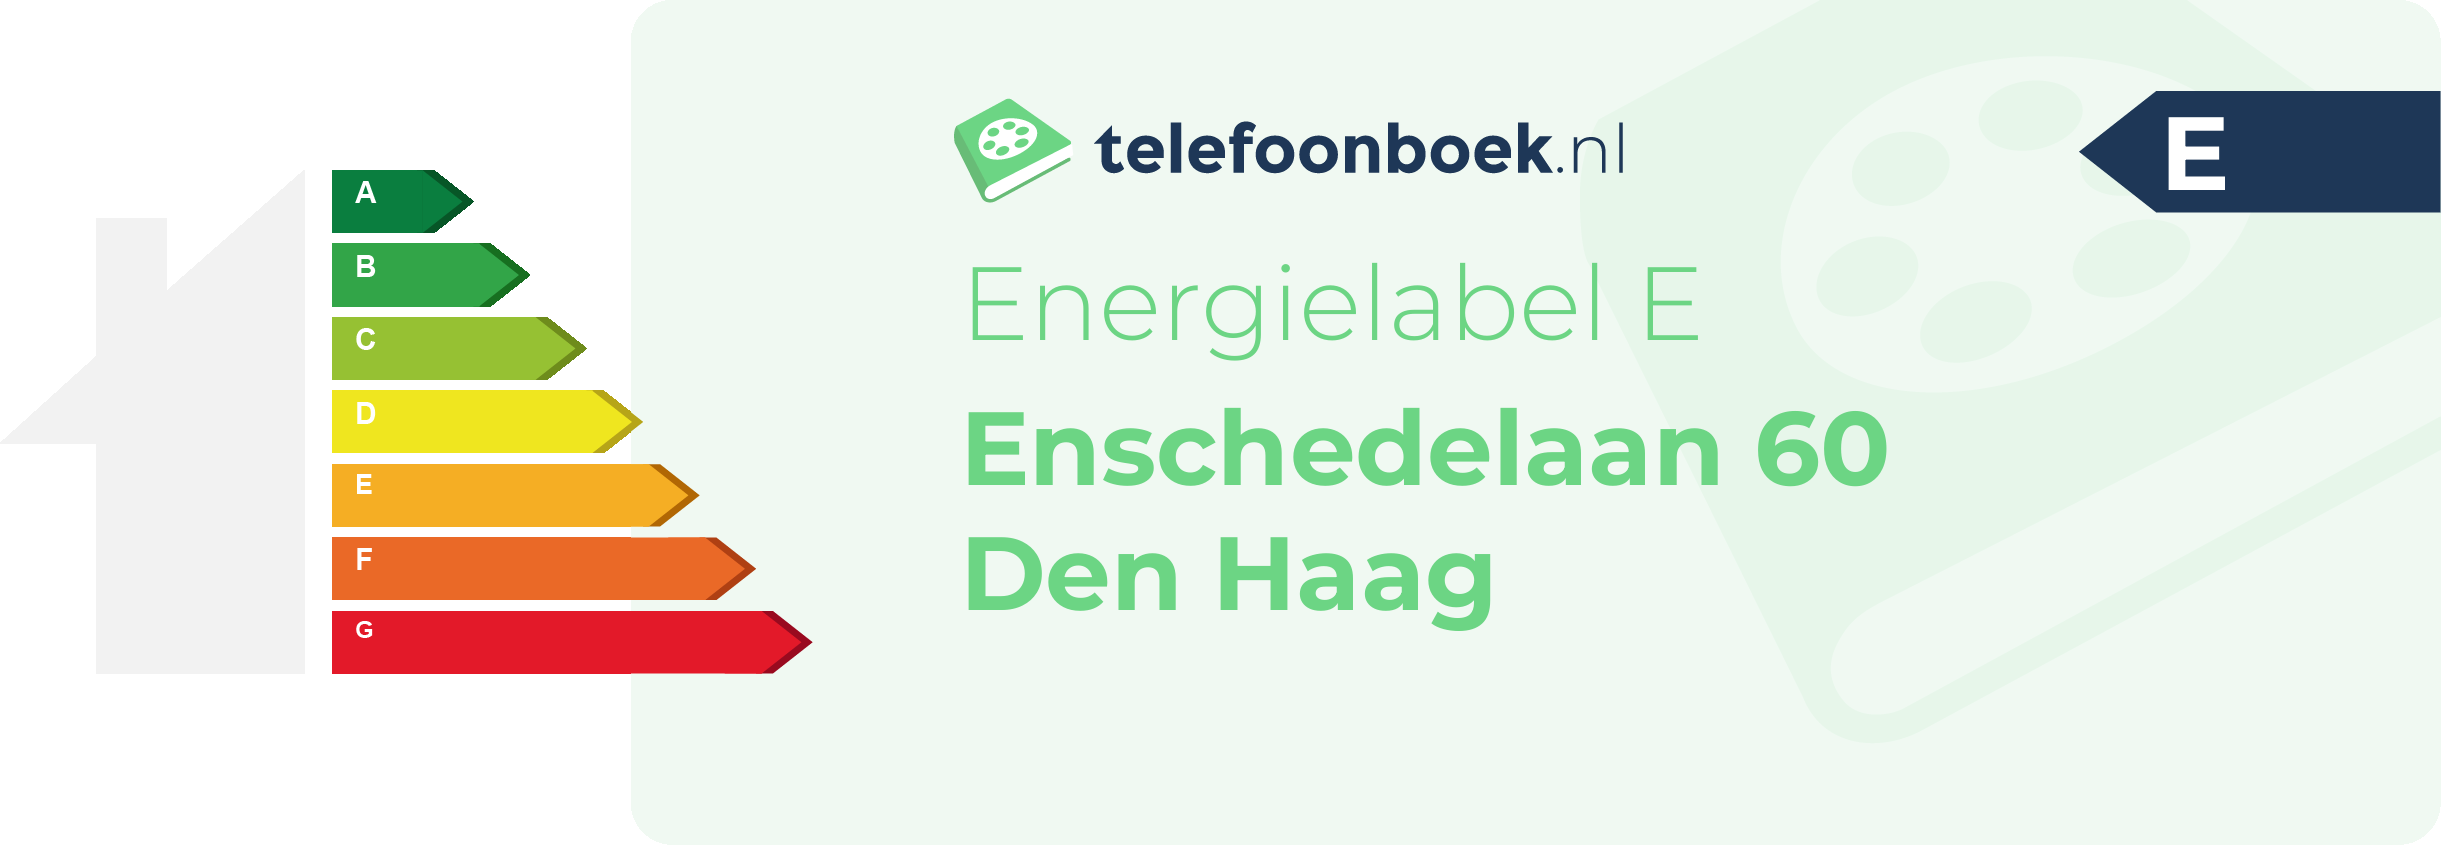 Energielabel Enschedelaan 60 Den Haag